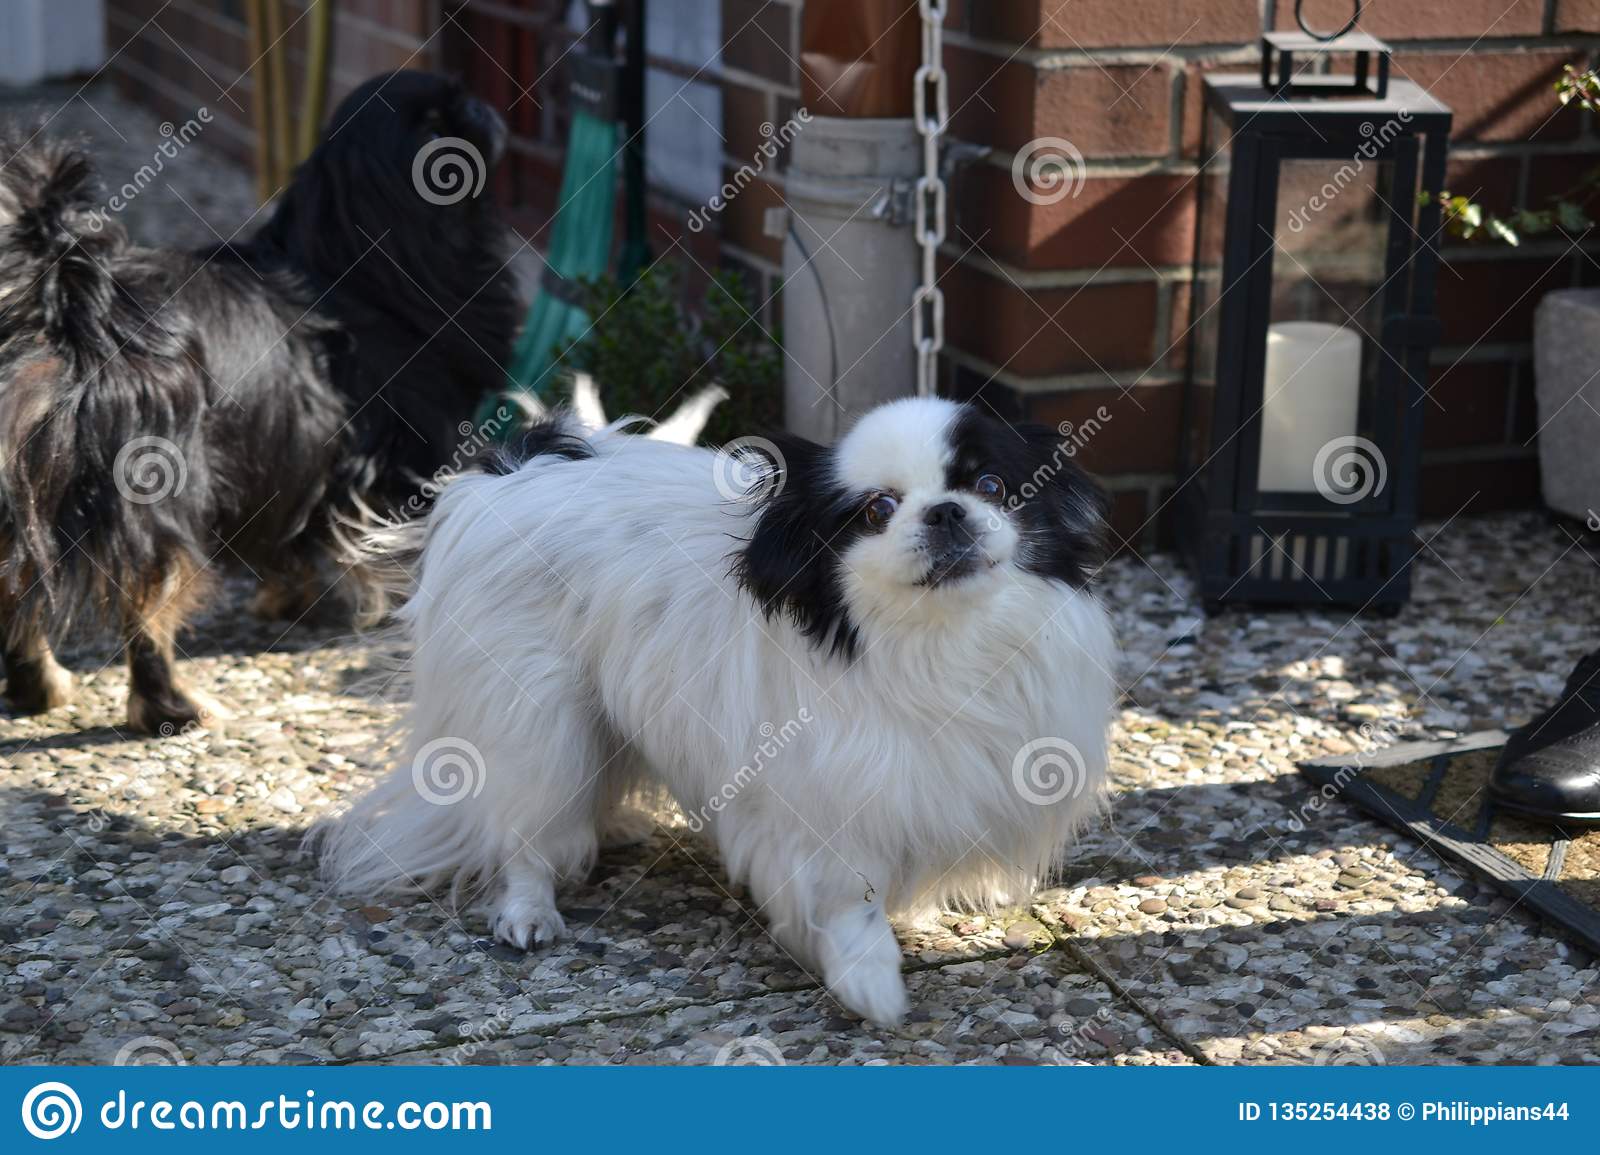 race de couples pékinois blanche et noire courte longue adorable cheveux jouant ensemble dans le jardin chiot chien